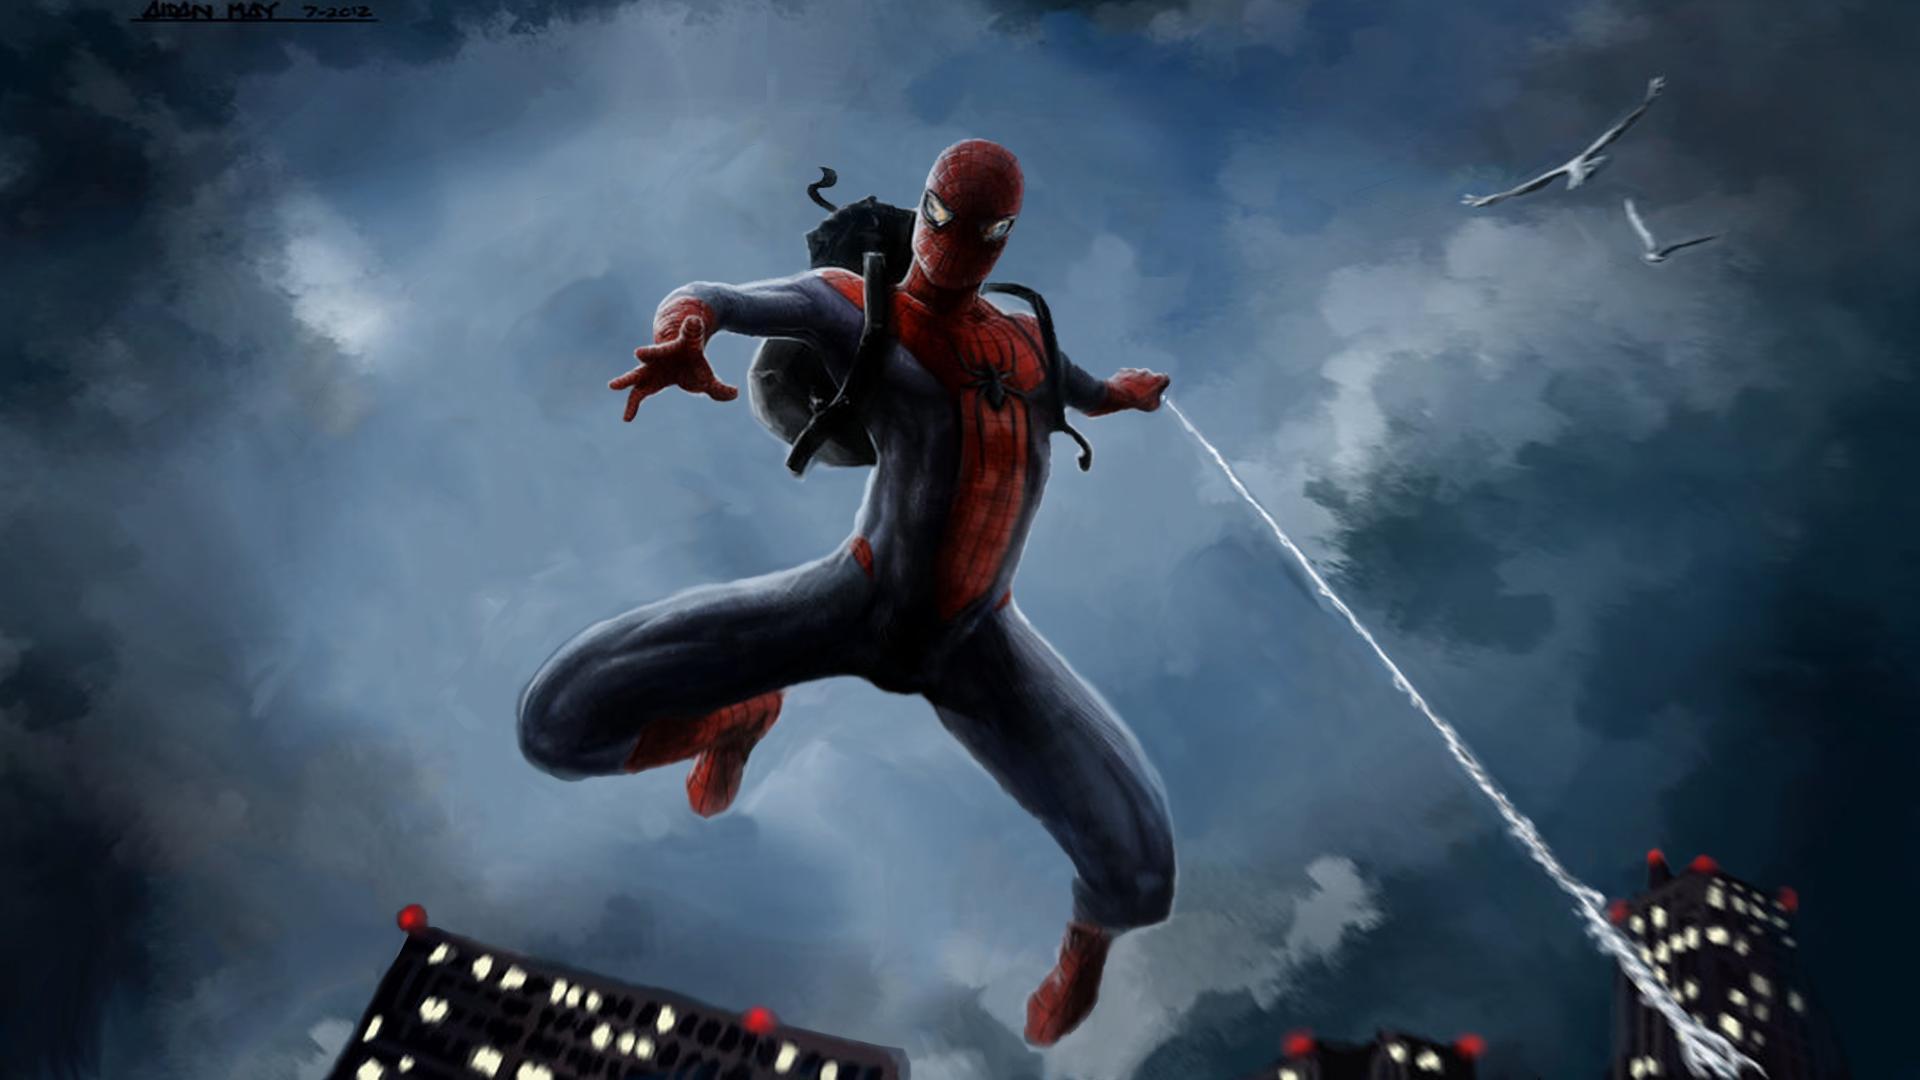 Ảnh Người Nhện Spider Man 3d Ngầu Cute Đẹp Sắc Nét